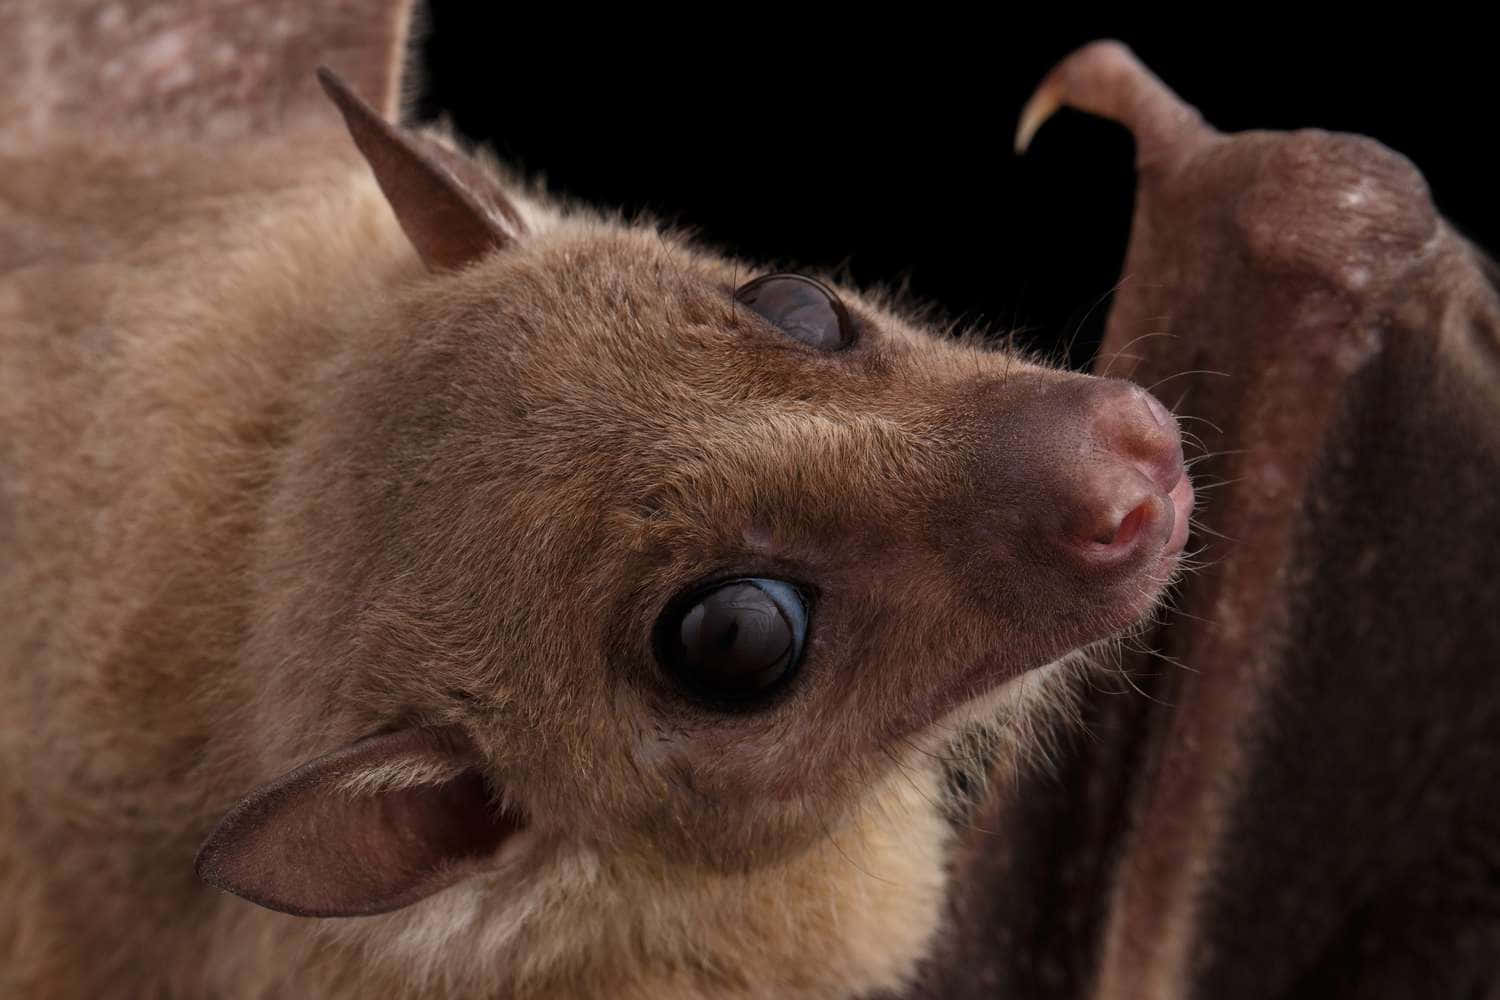 Cute Bat Closeup Pictures